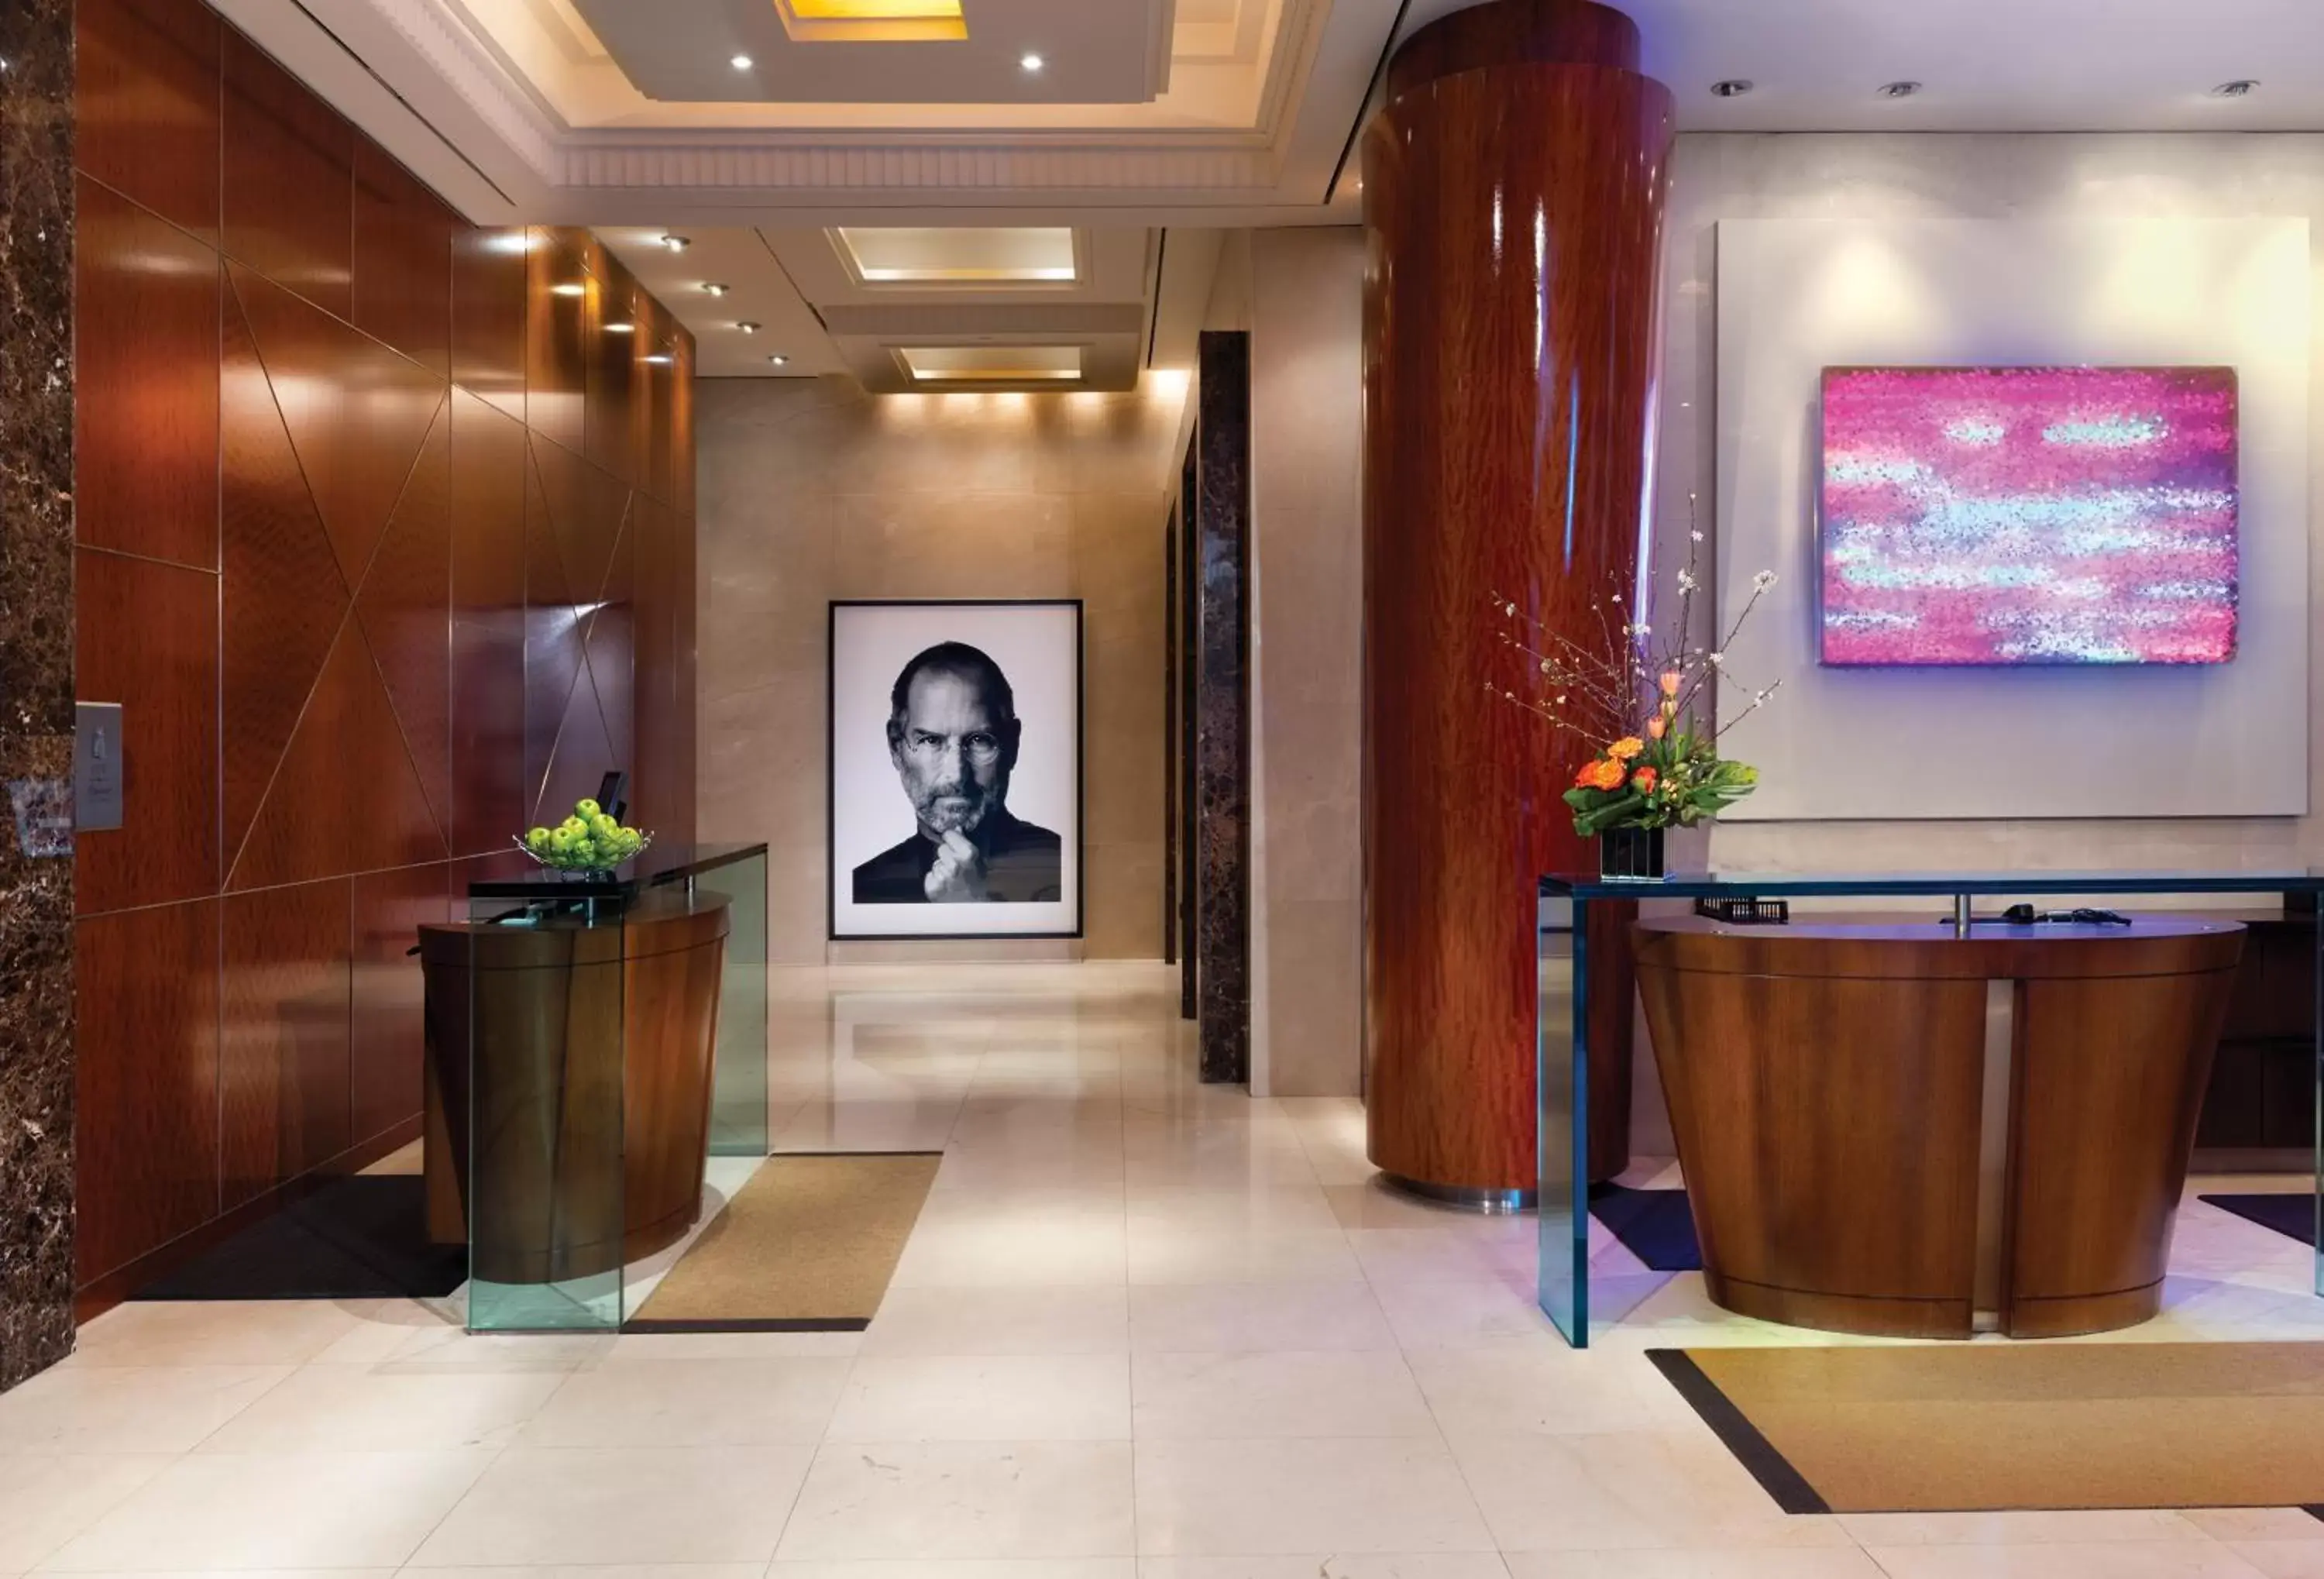 Lobby or reception, Lobby/Reception in The SoHo Hotel